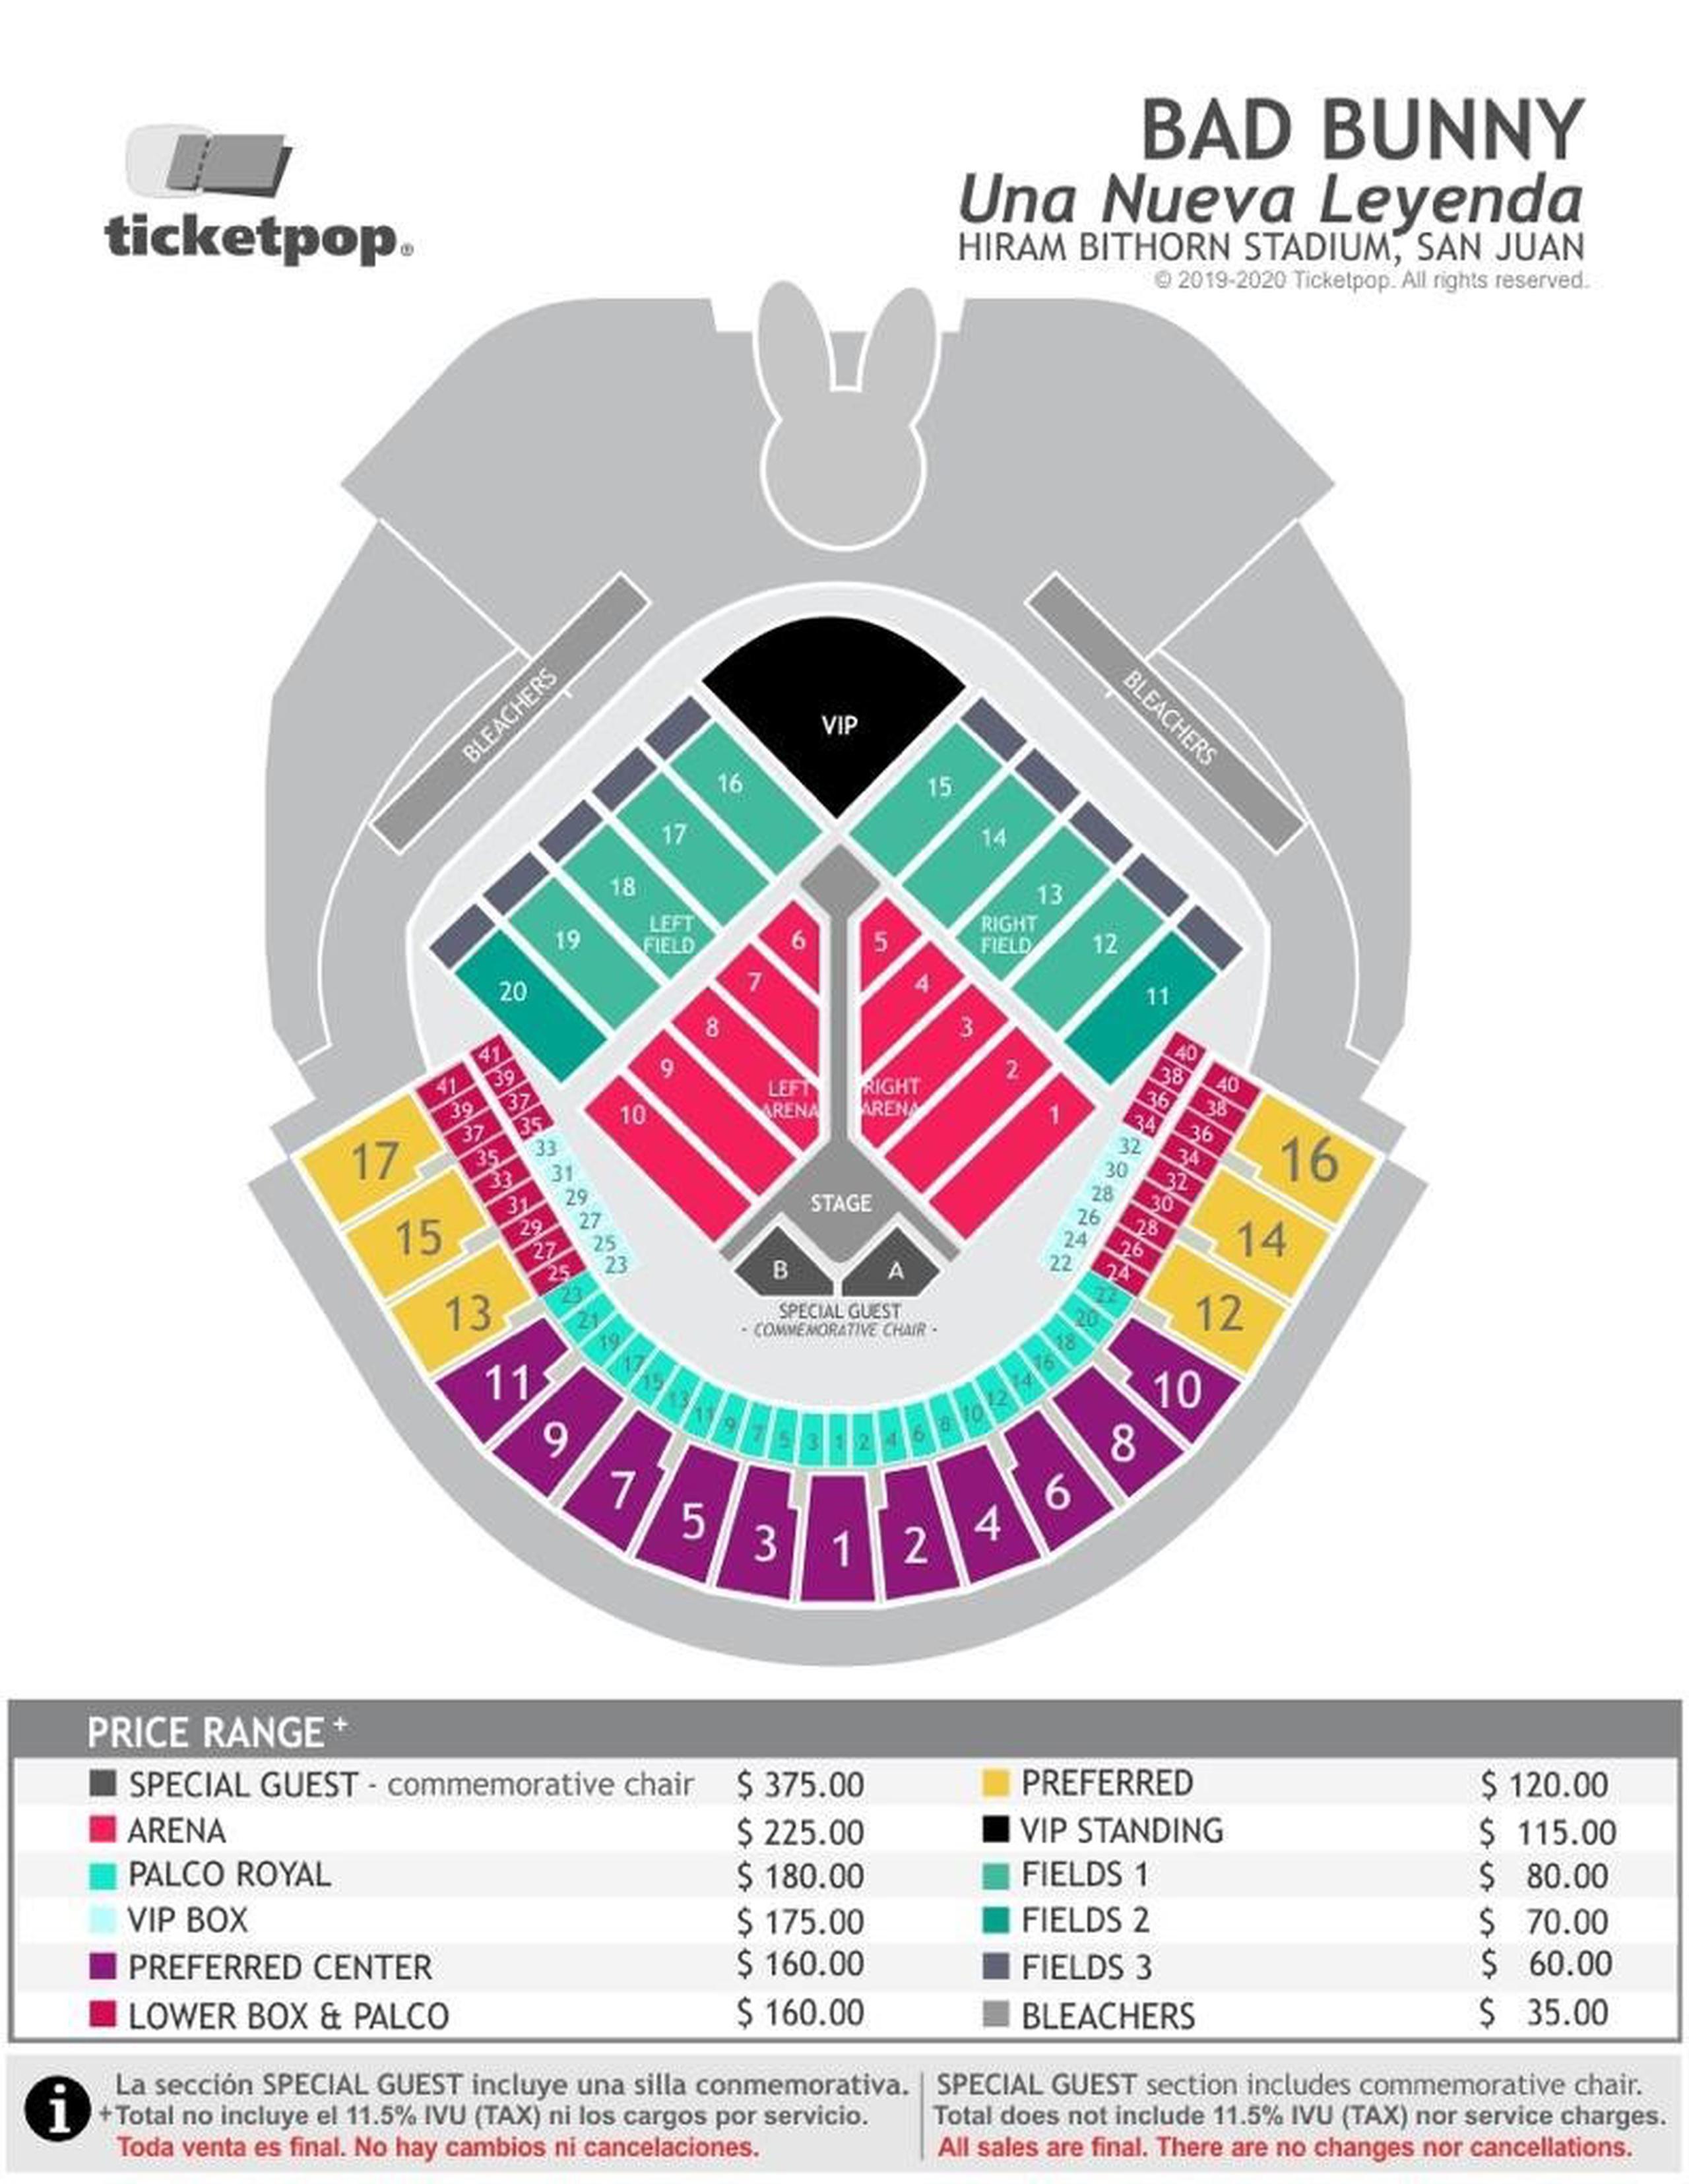 Diagrama de la tarima y asientos del concierto. (Suministrada)